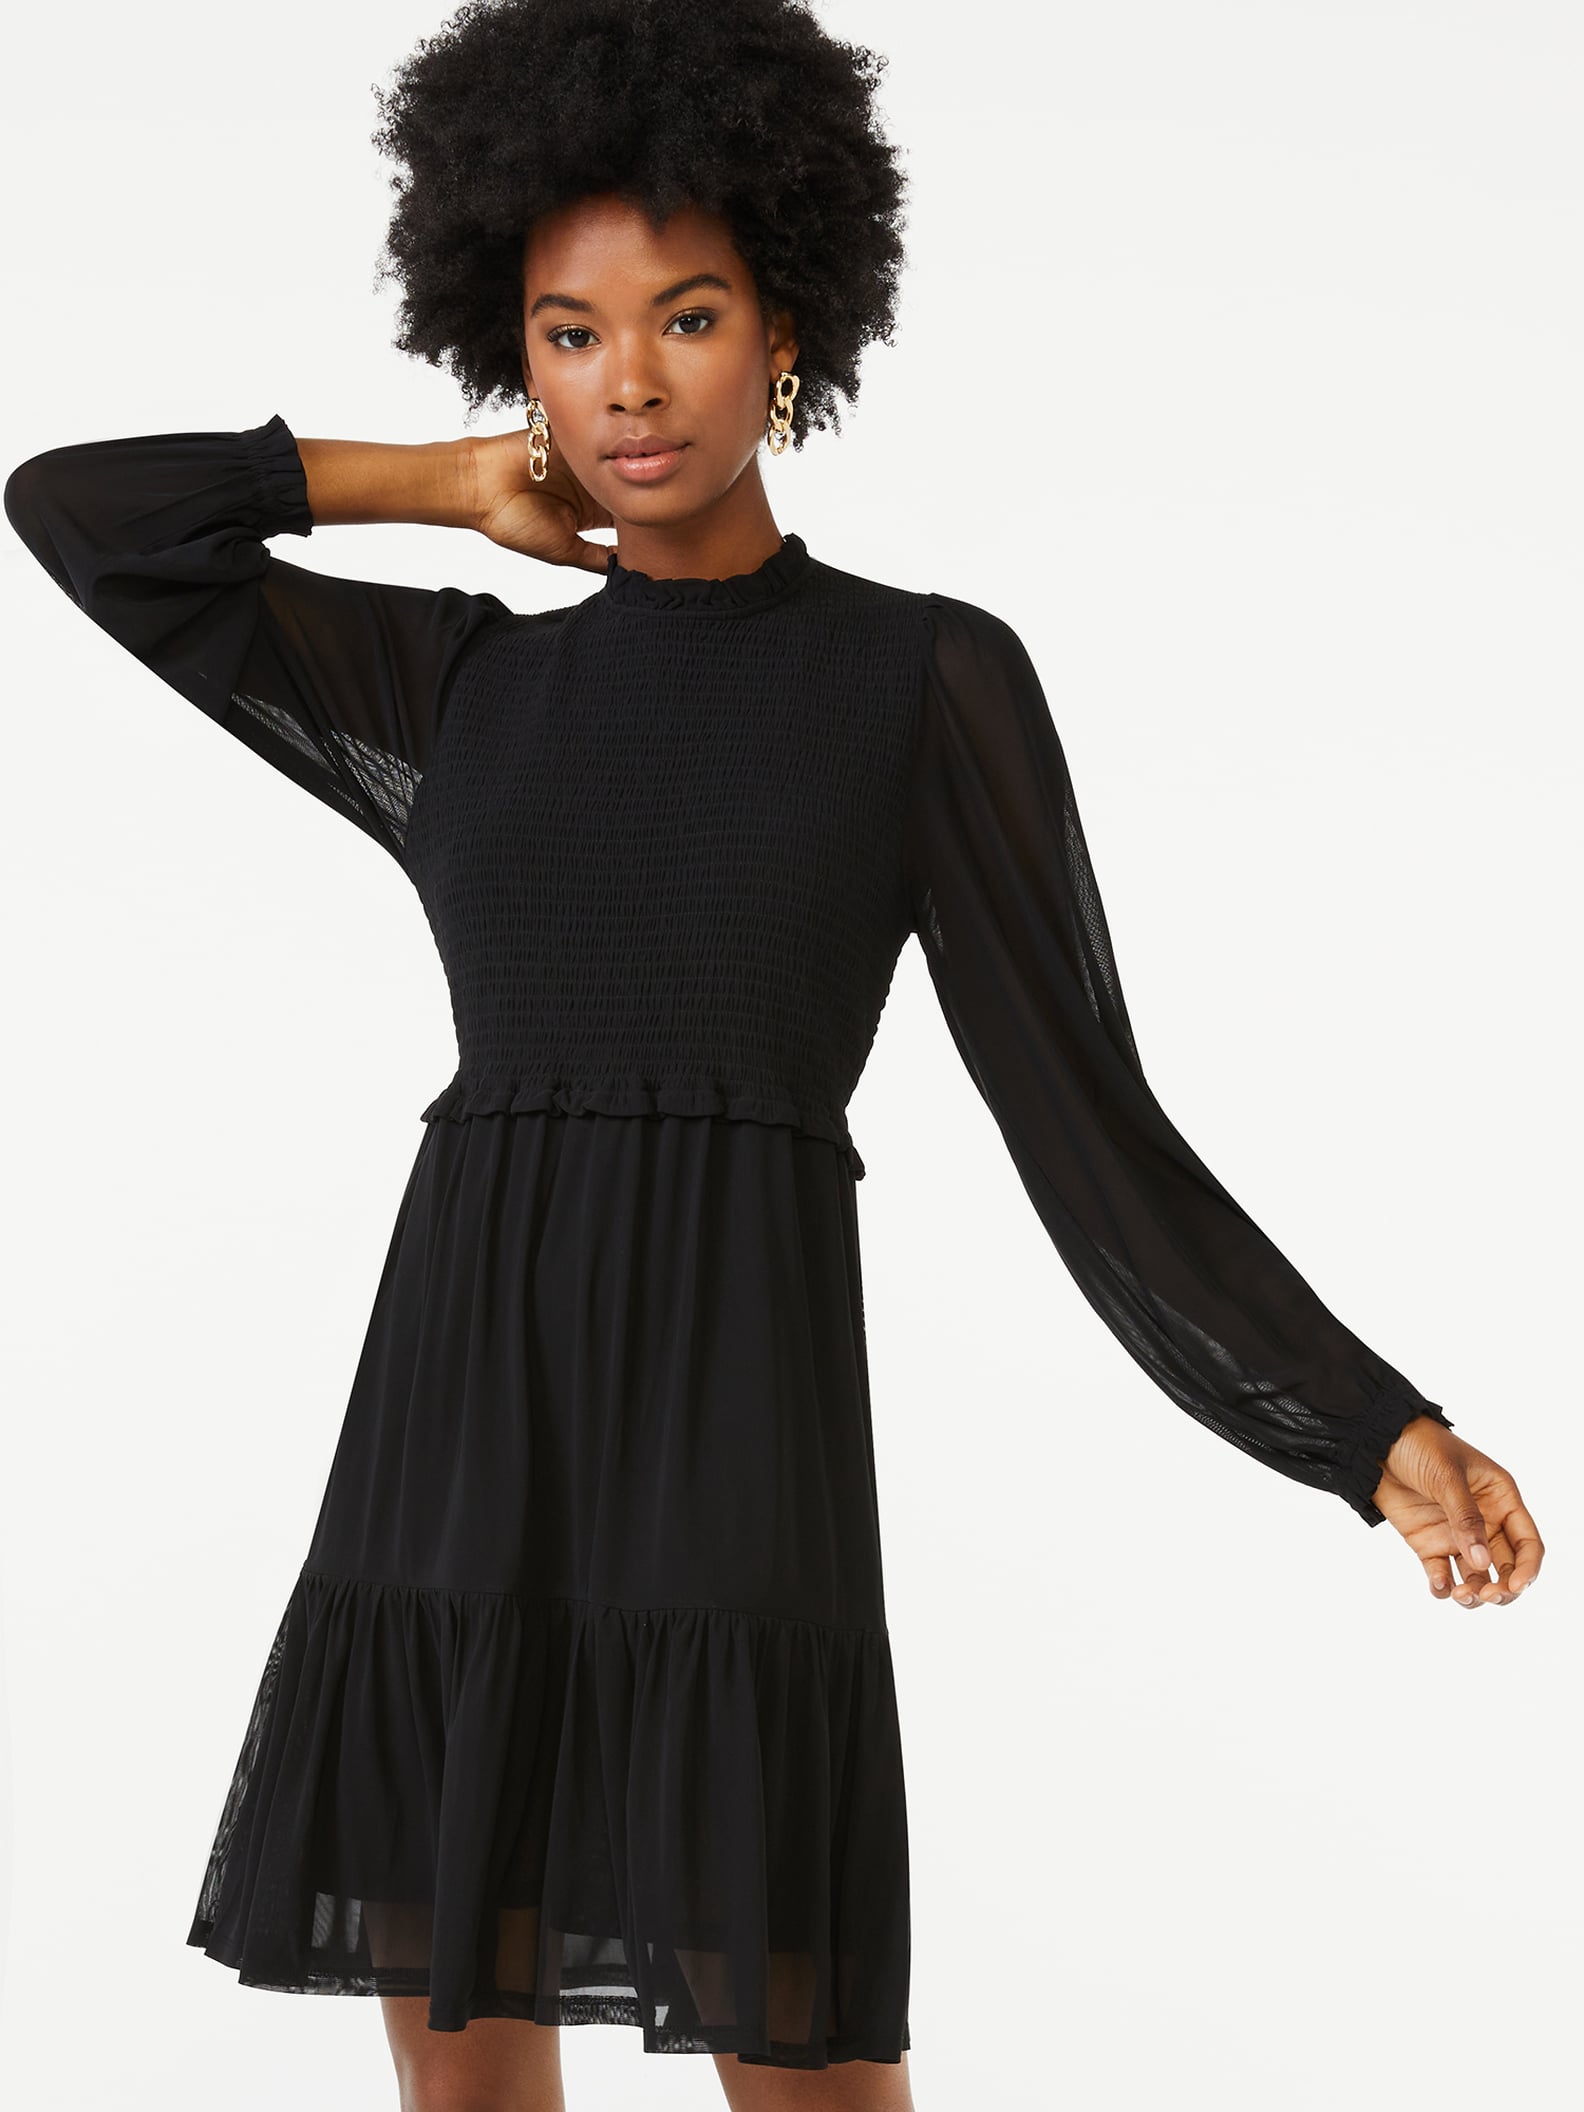 Best Fall Dresses From Walmart 2021 | POPSUGAR Fashion